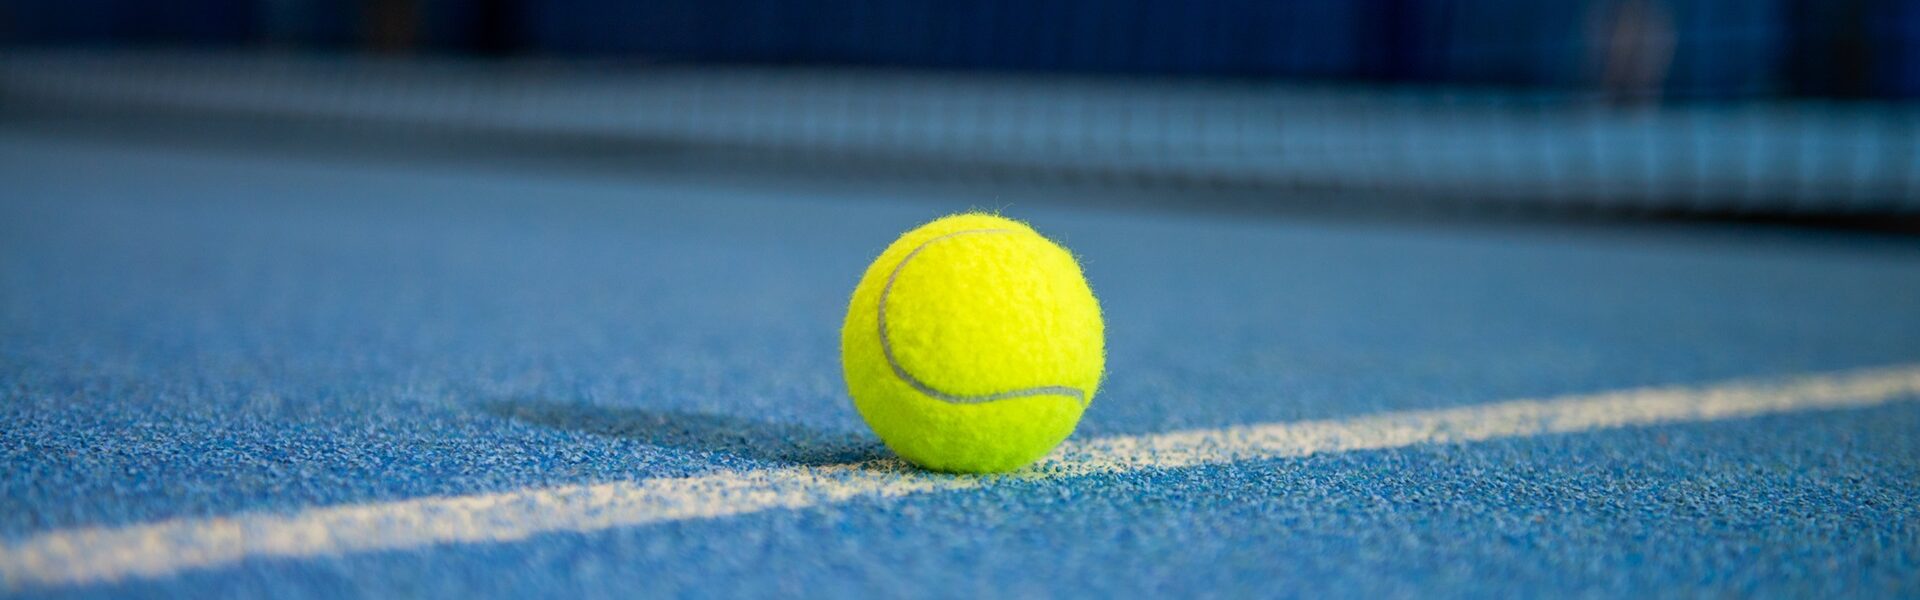 Tennis-Star Leylah Fernandez ist neue SAP-Markenbotschafterin